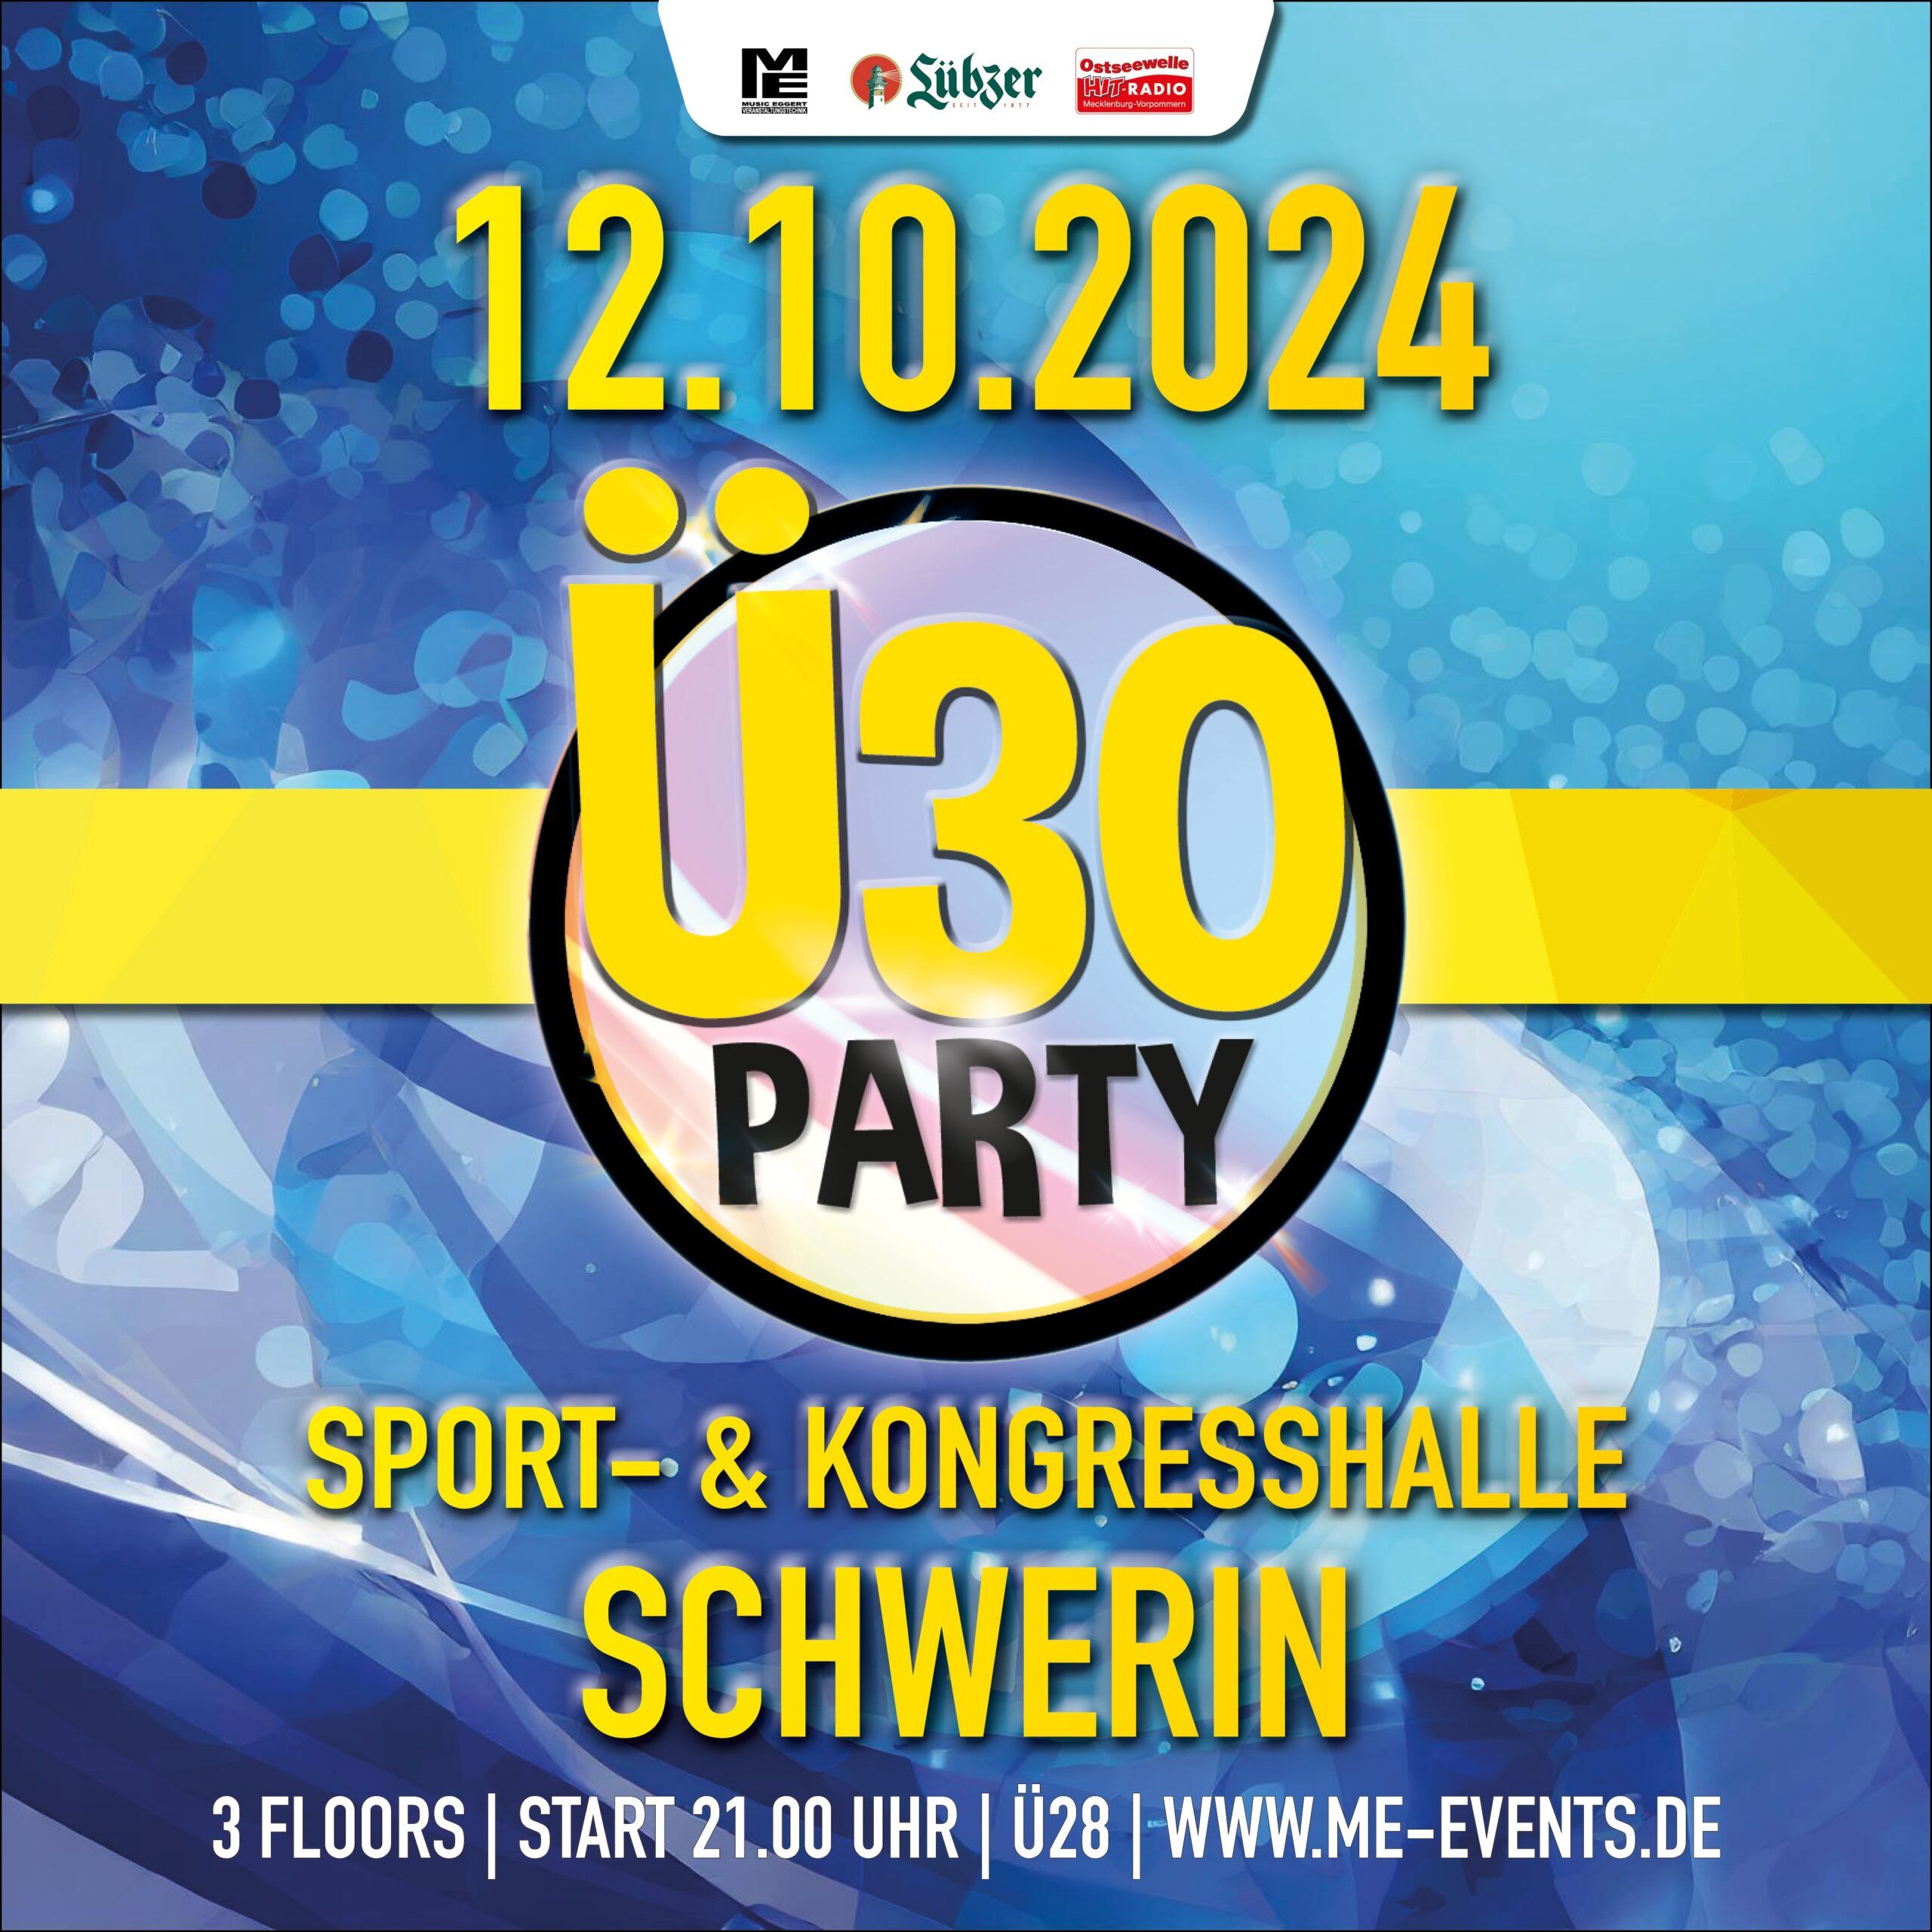 Ü30 Party am 12.10.2024 in der Sport- und Kongresshalle Schwerin!